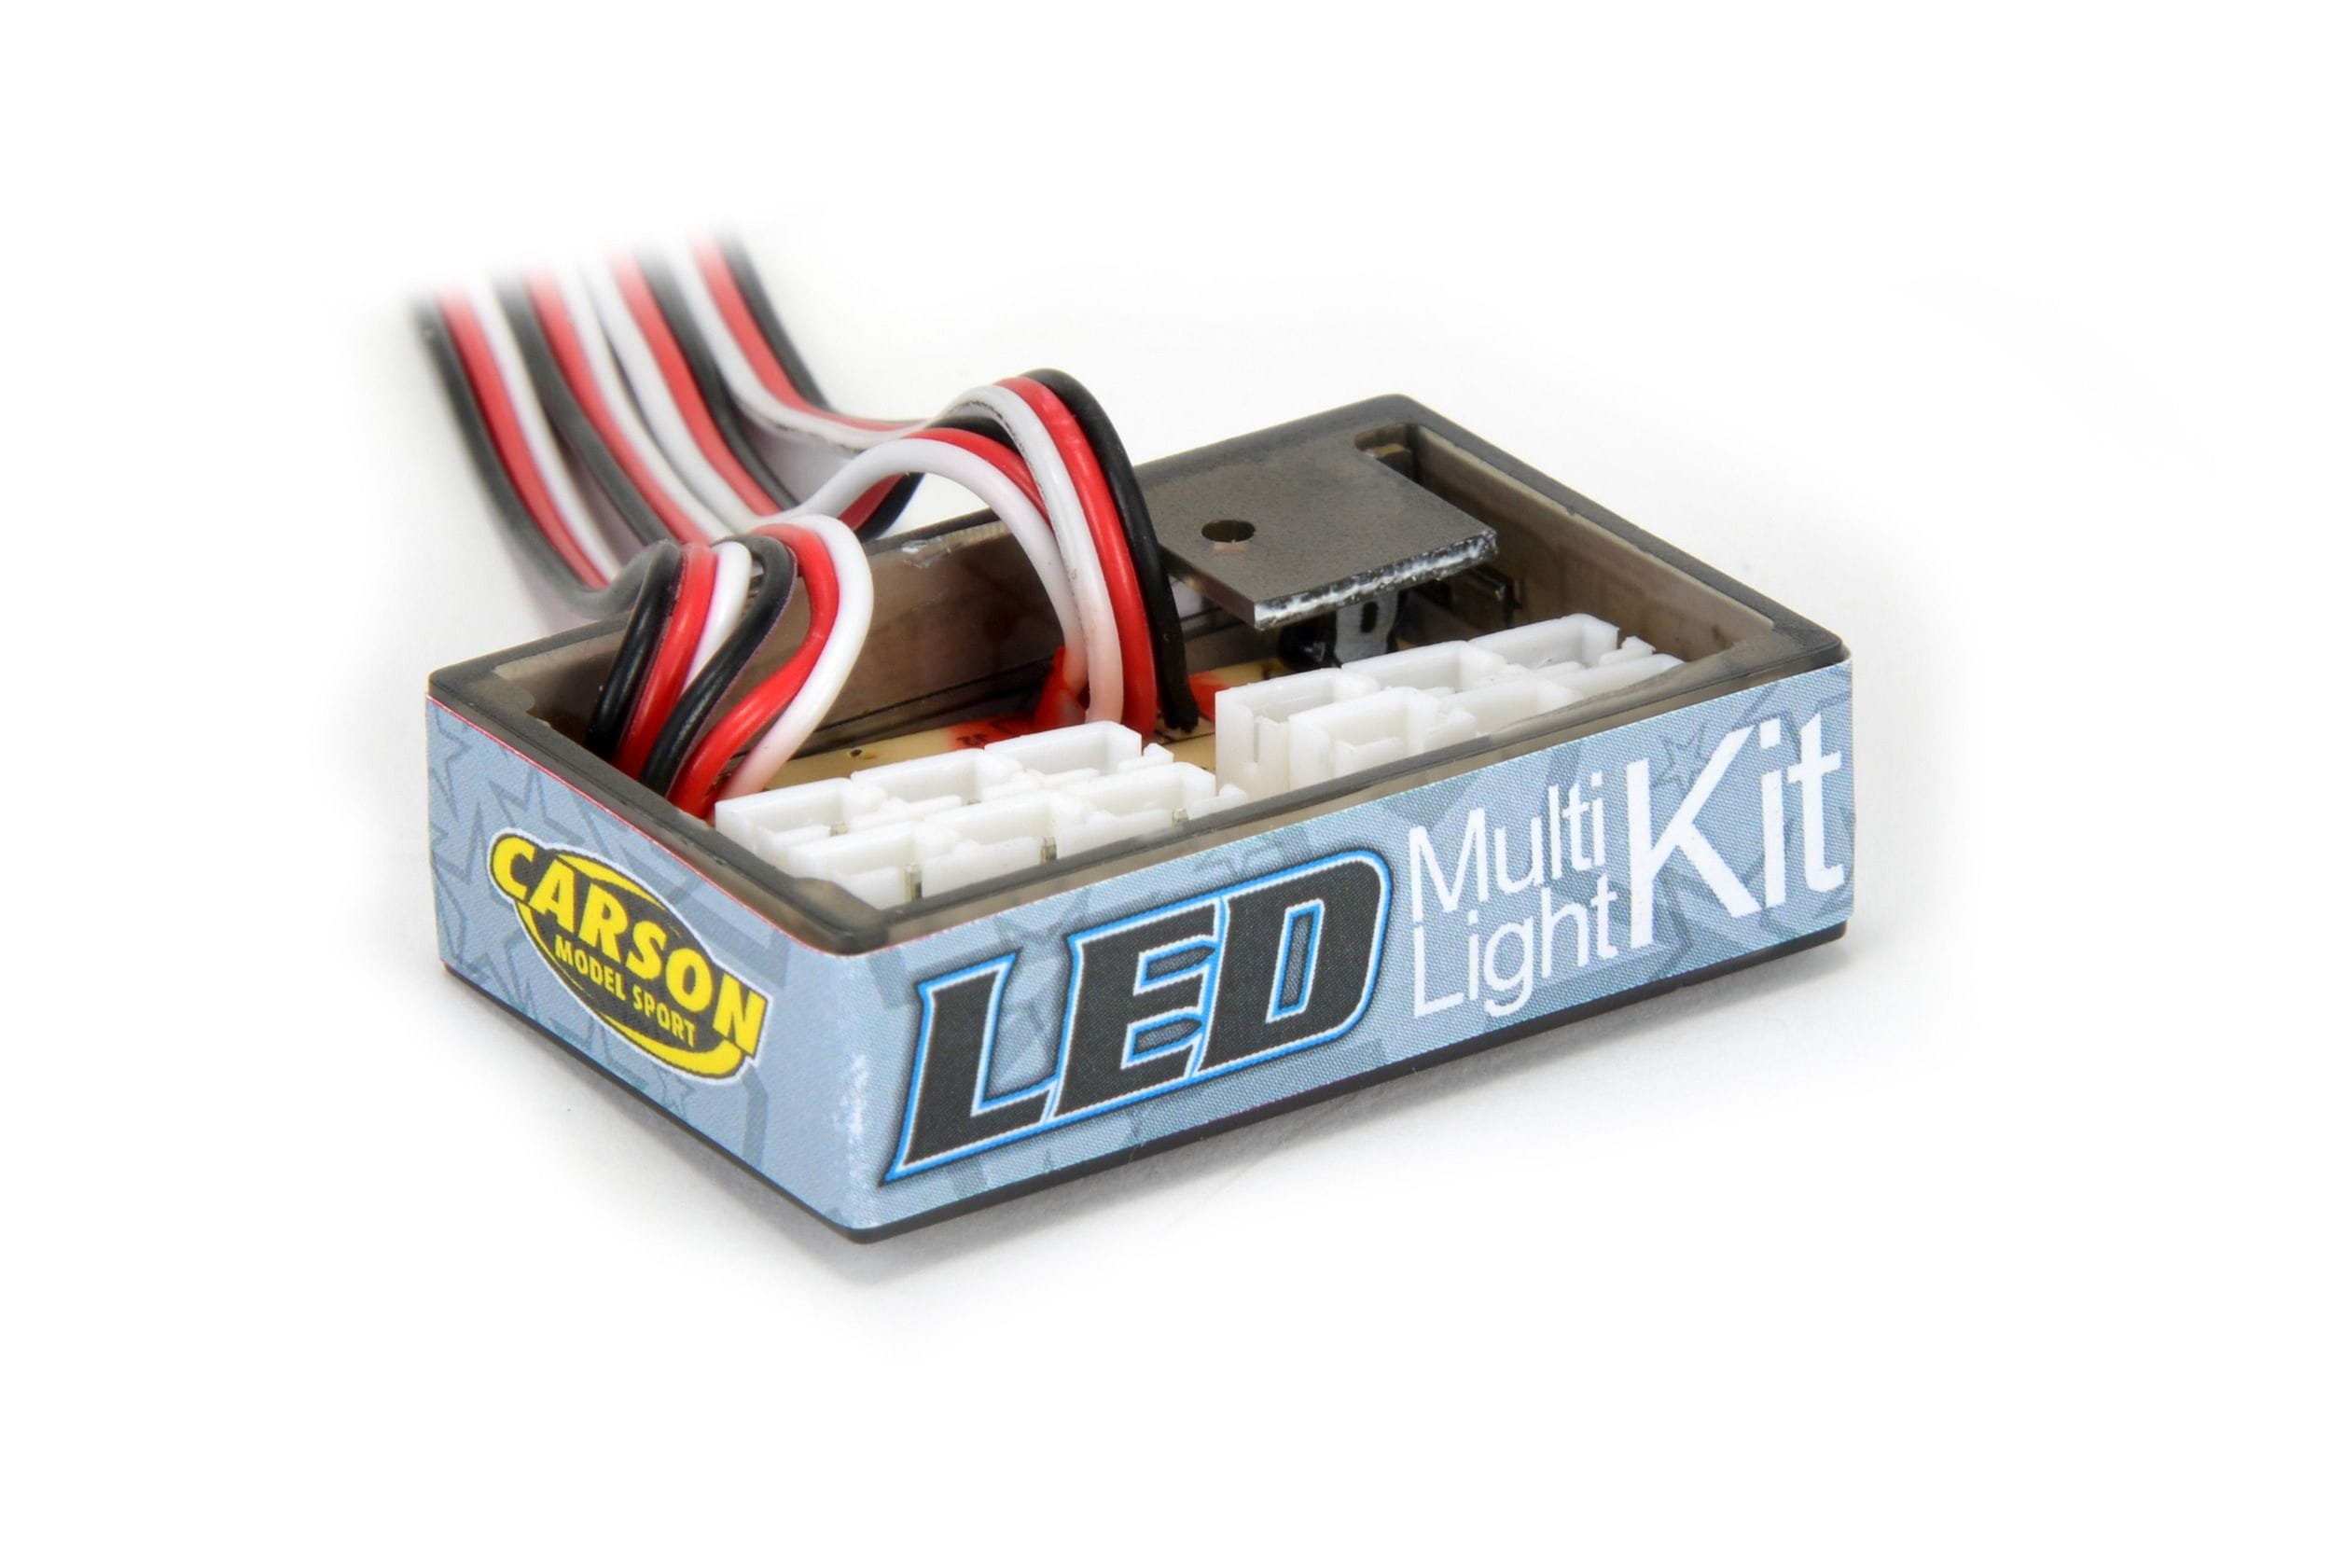 LED Gesamt Kit Leuchten + Verkabelung für Anhänger, mit blinkenden